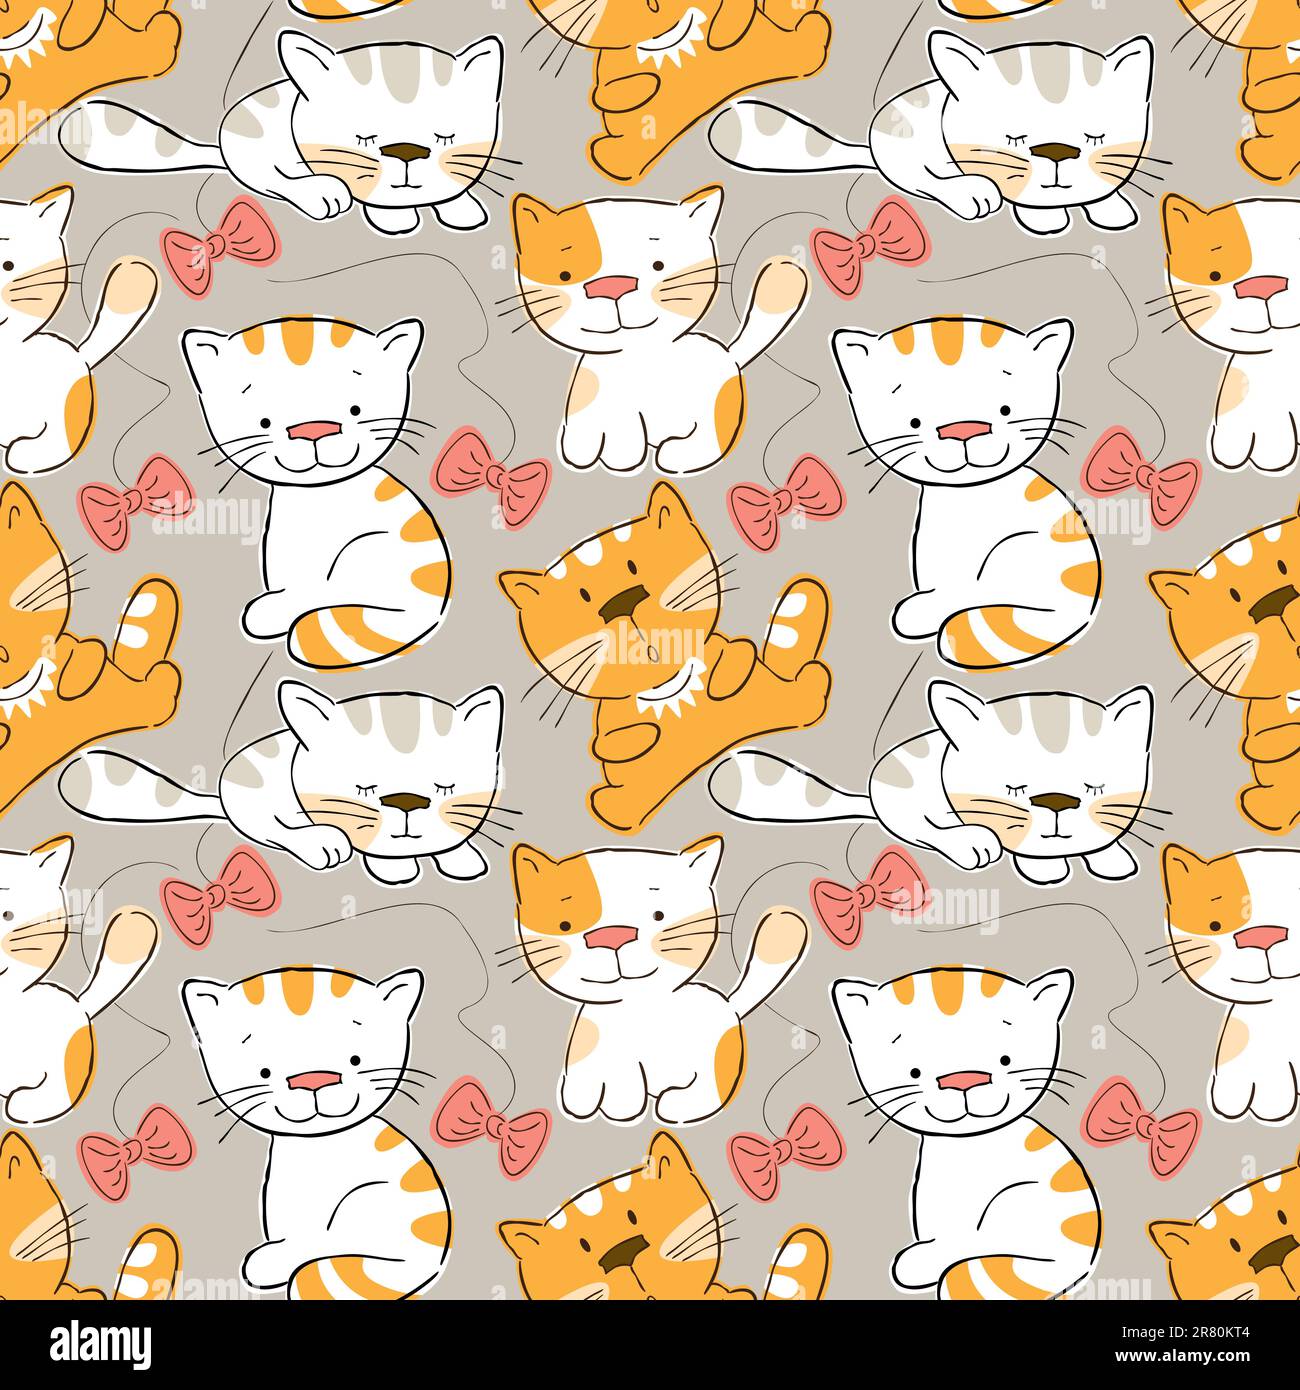 Seamless pattern -funny cartoon kitten. Stock Vector